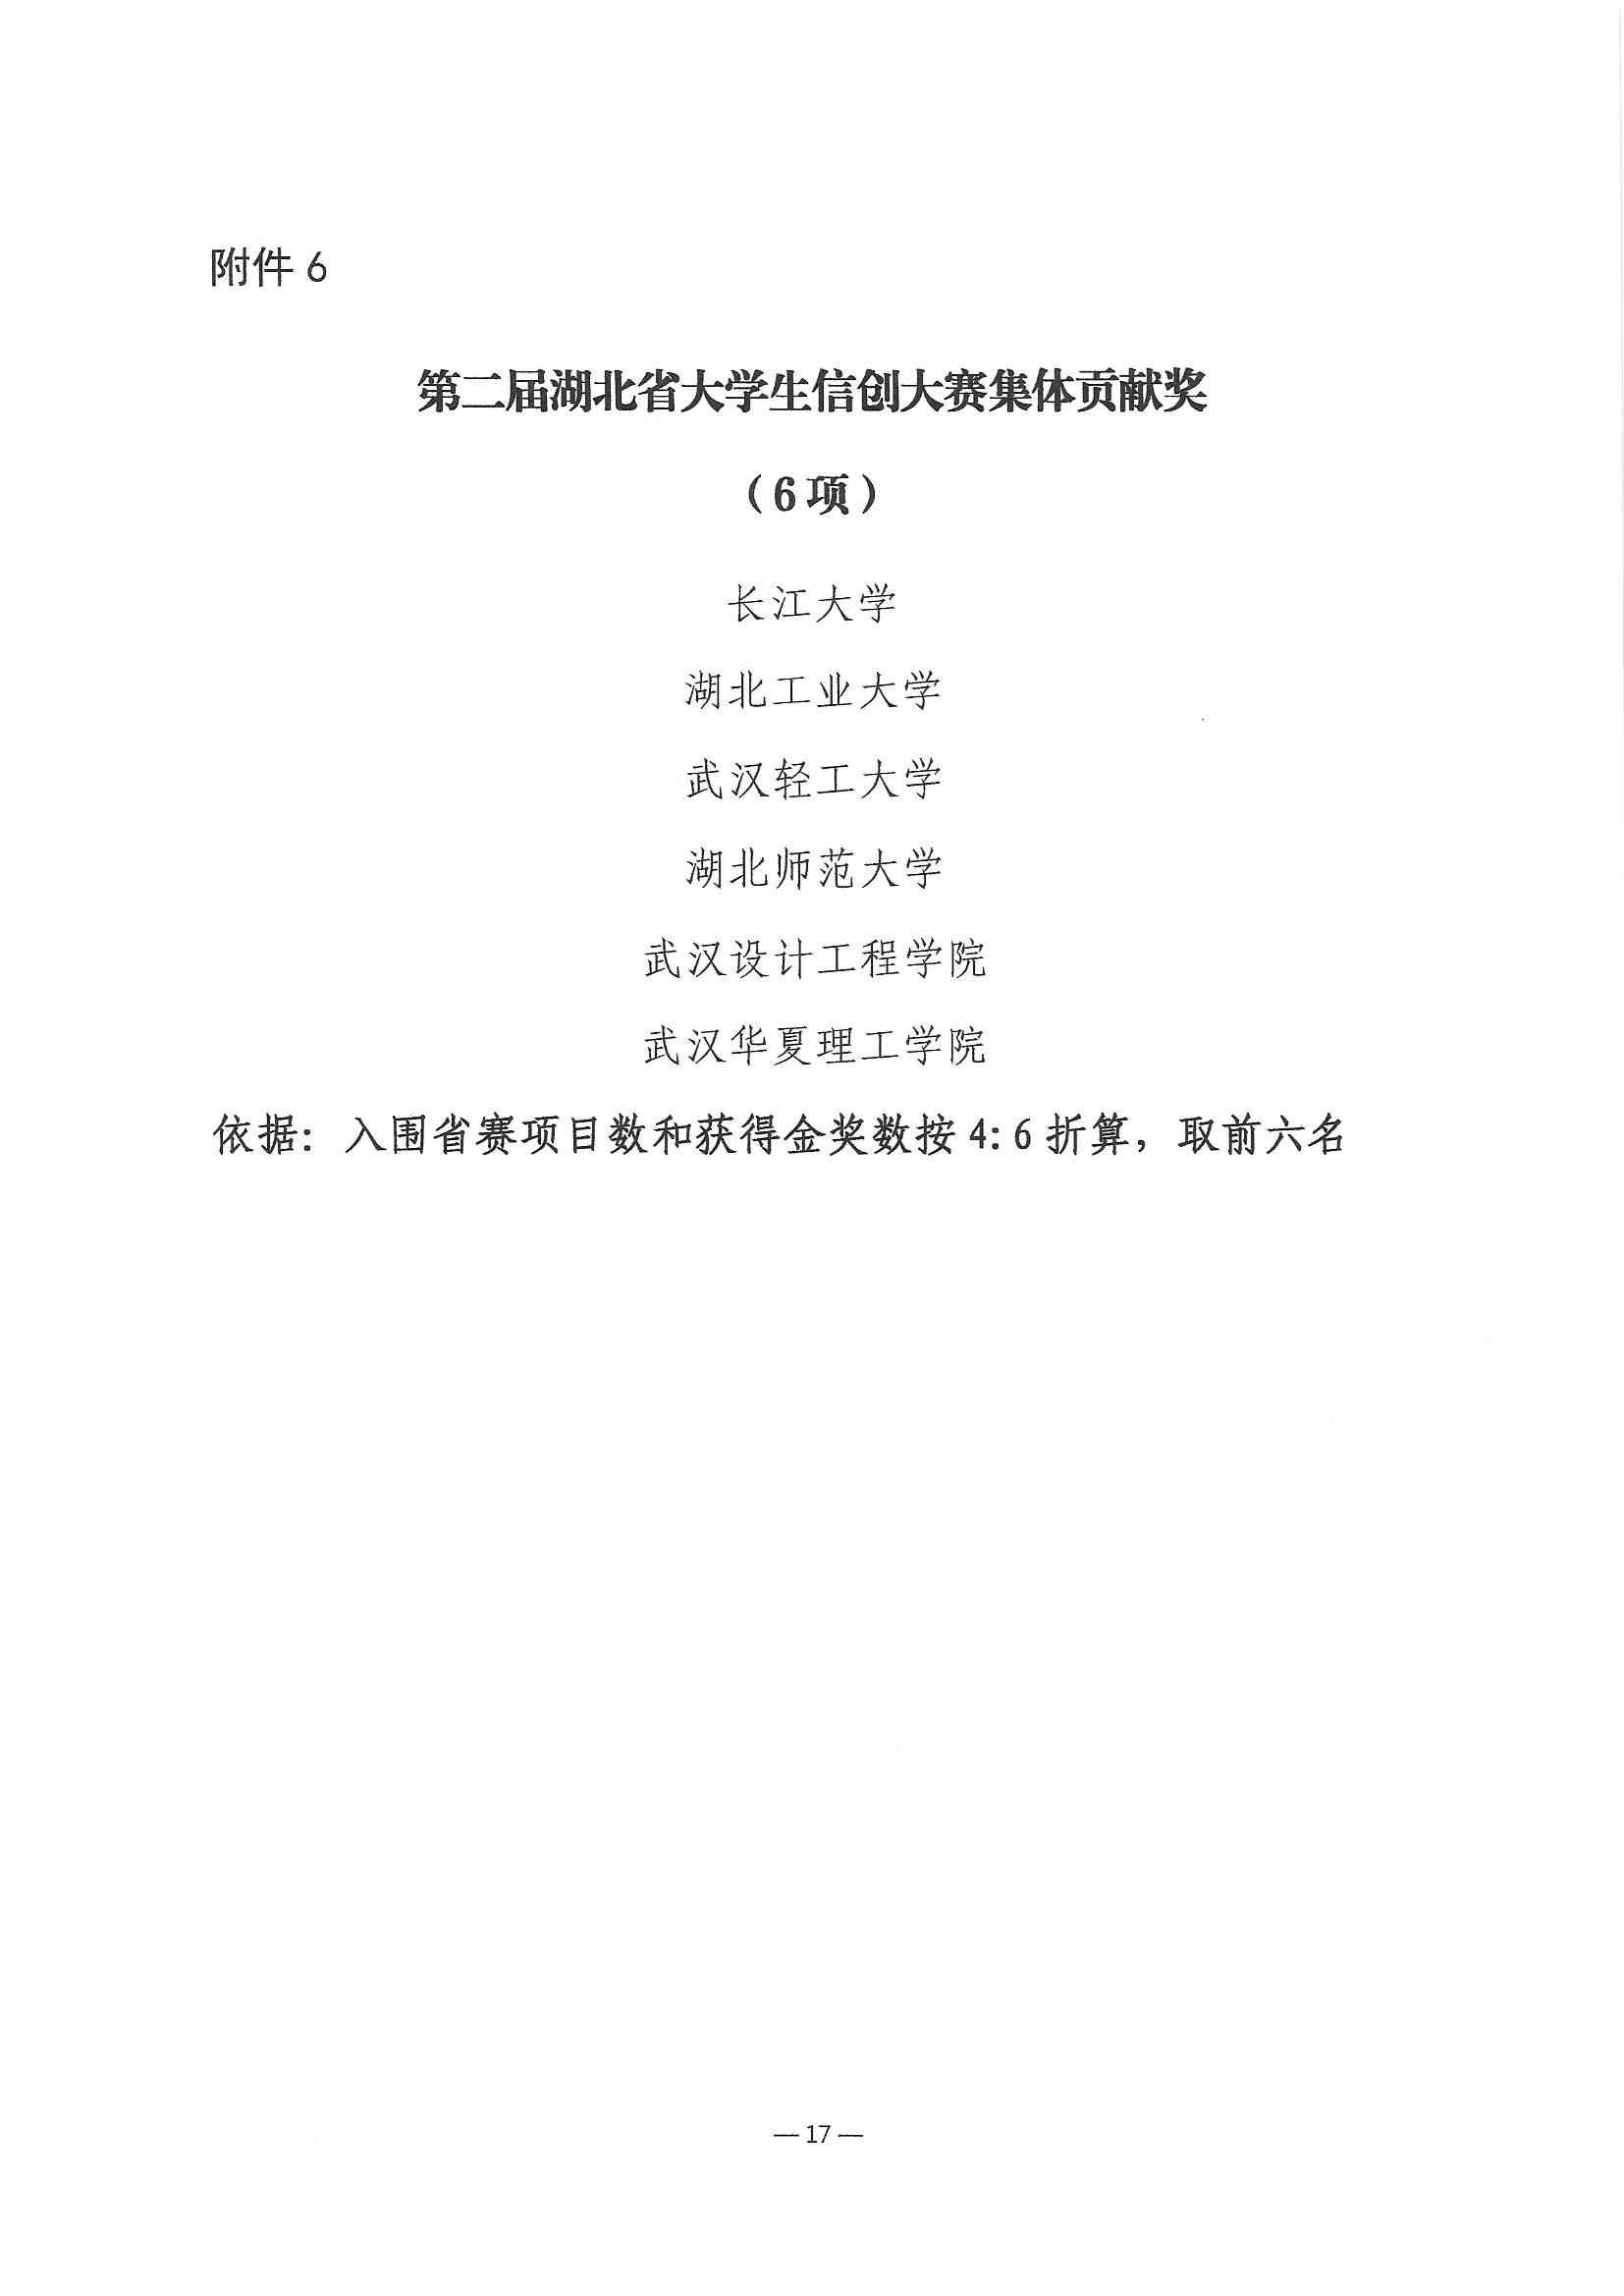 2023.6.8关于公布第二届湖北省大学生信创大赛获奖名单的通知(1)_页面_17.jpg